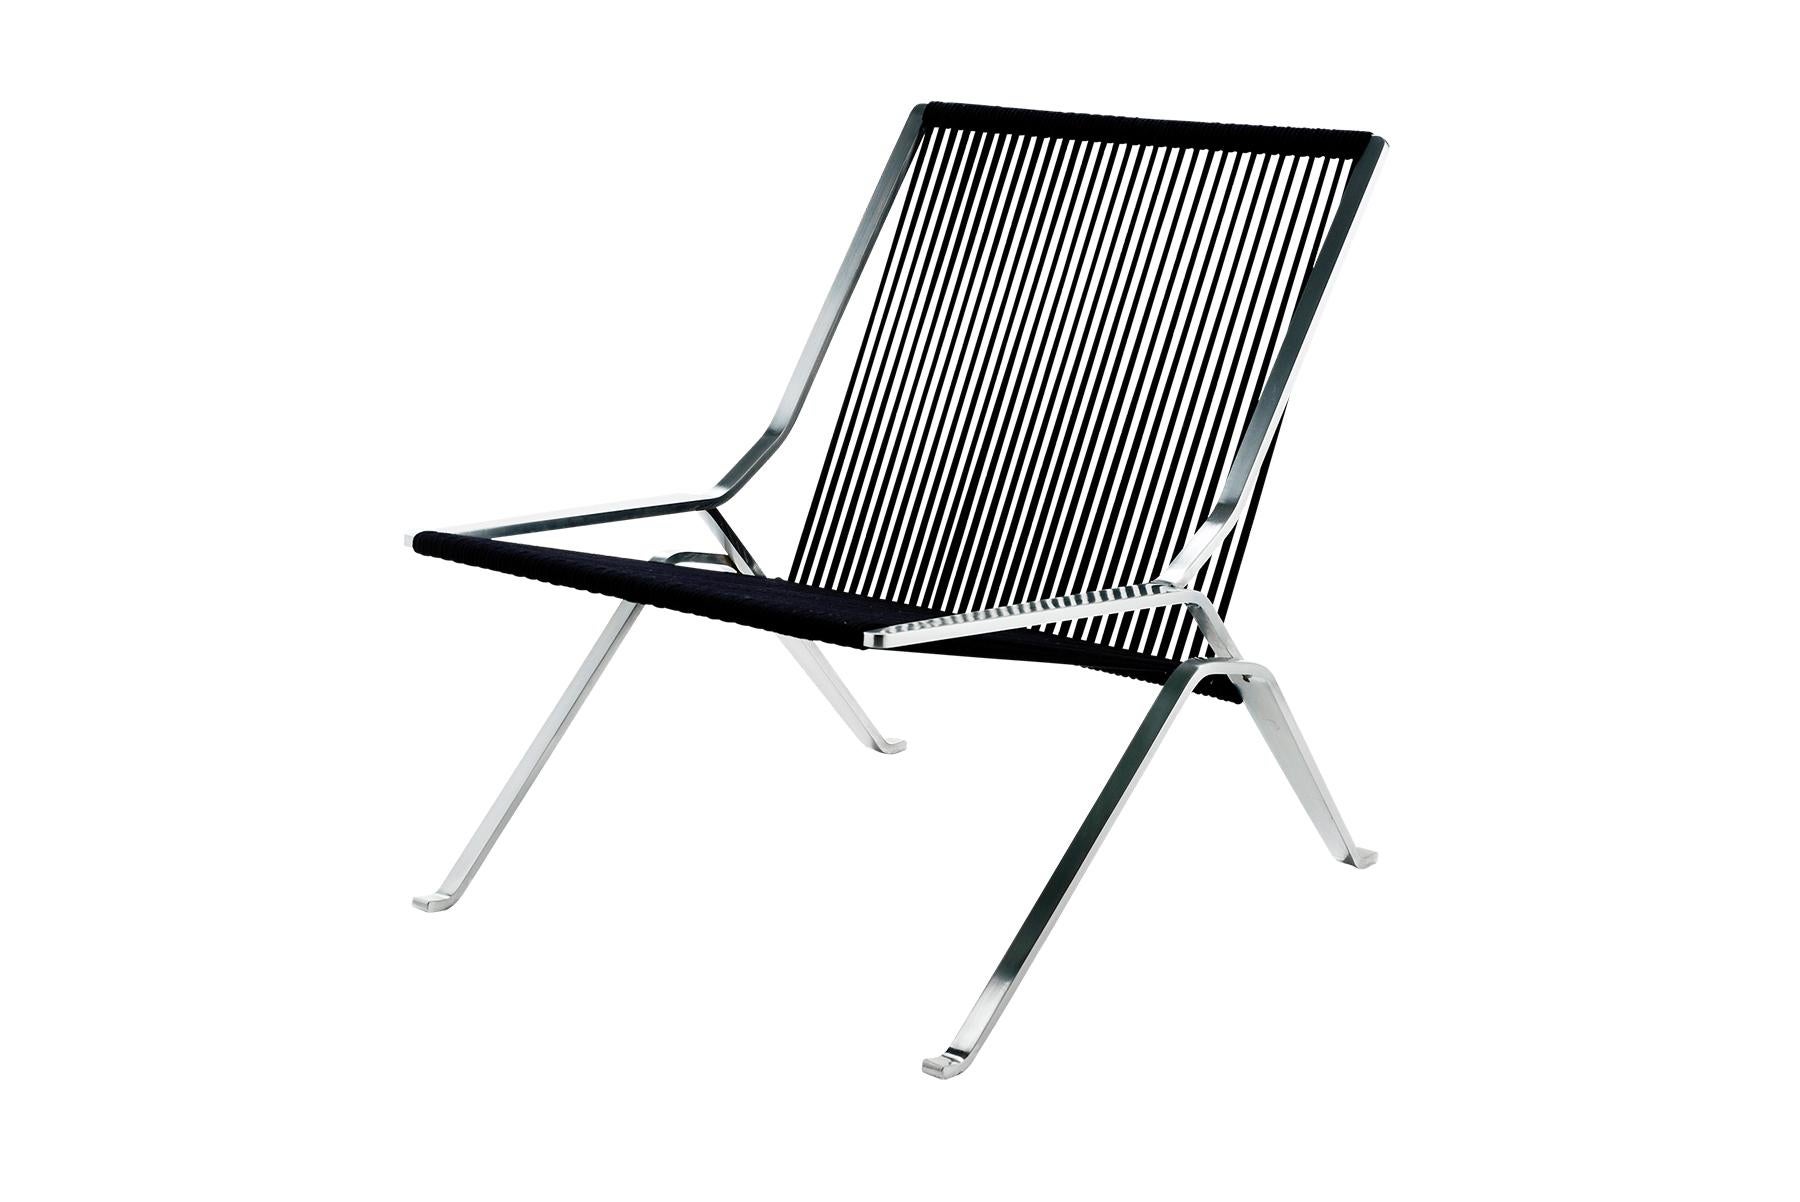 La chaise longue PK24, avec ses courbes faciles et sa forme organique, est peut-être la chaise la plus reconnaissable de l'œuvre de Poul Kjærholm. L'inspiration de cette chaise vient de la période rococo et de la chaise longue française, qui